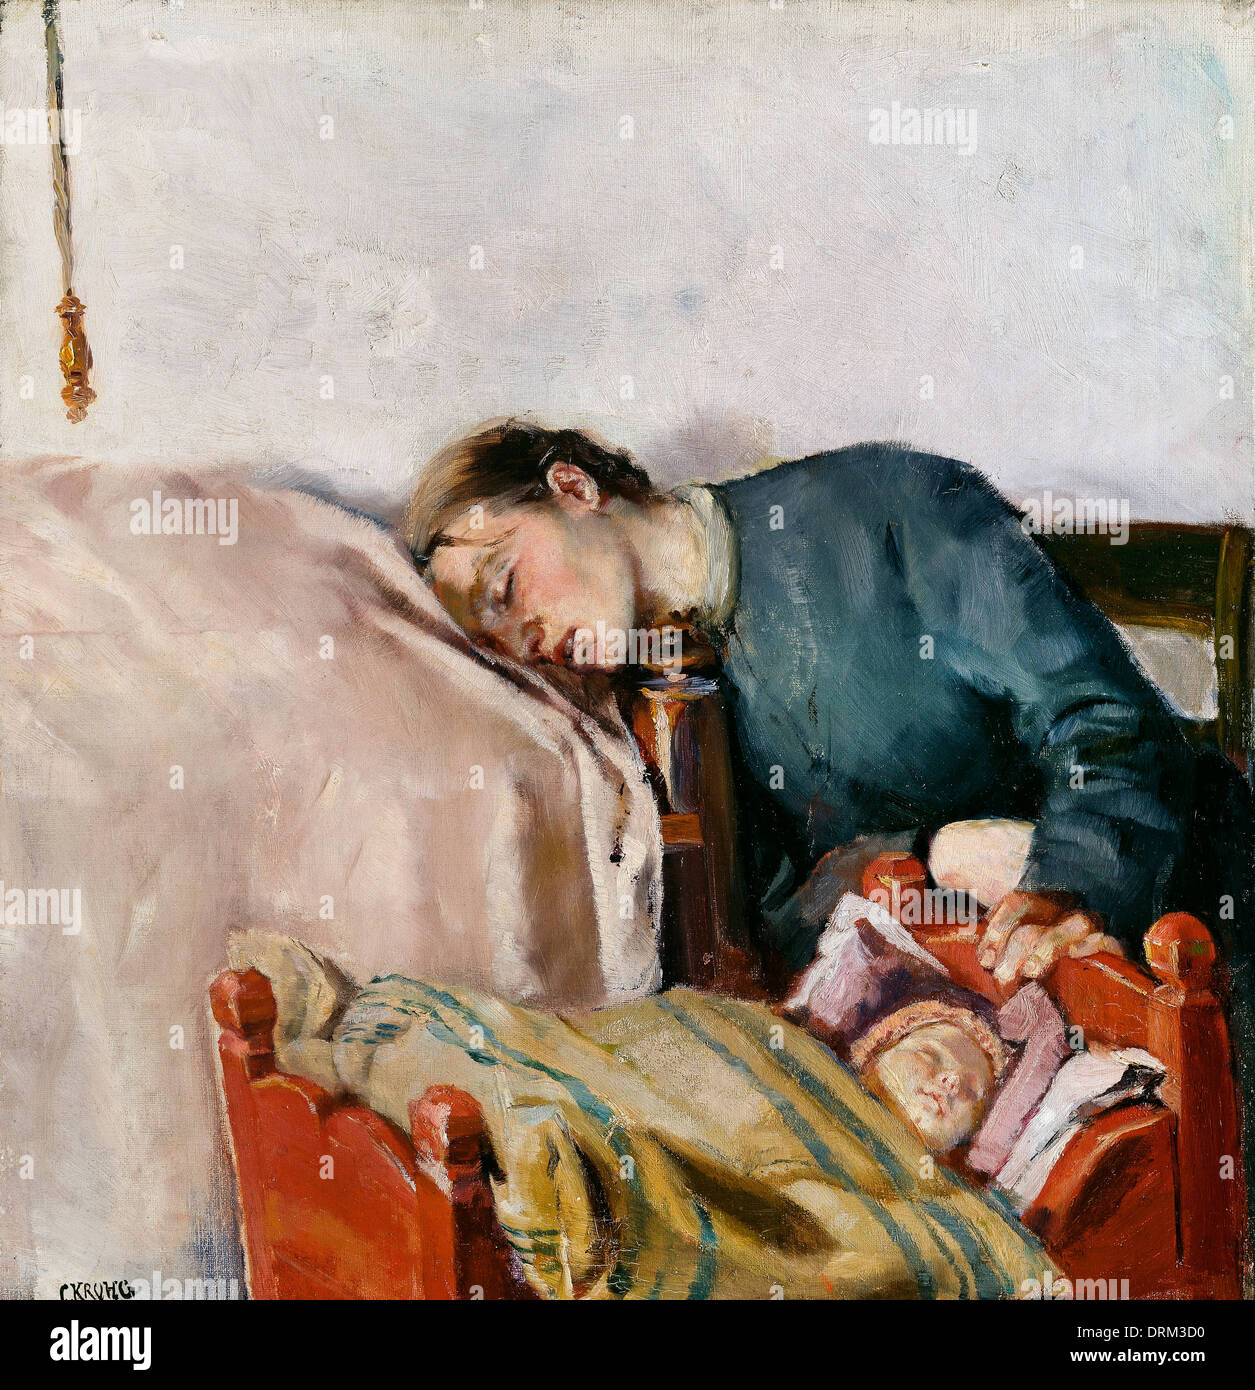 Christian Krohg, Mère et Enfant 1883 Huile sur toile. Le Musée National d'Art, Architecture et design, la Norvège. Banque D'Images